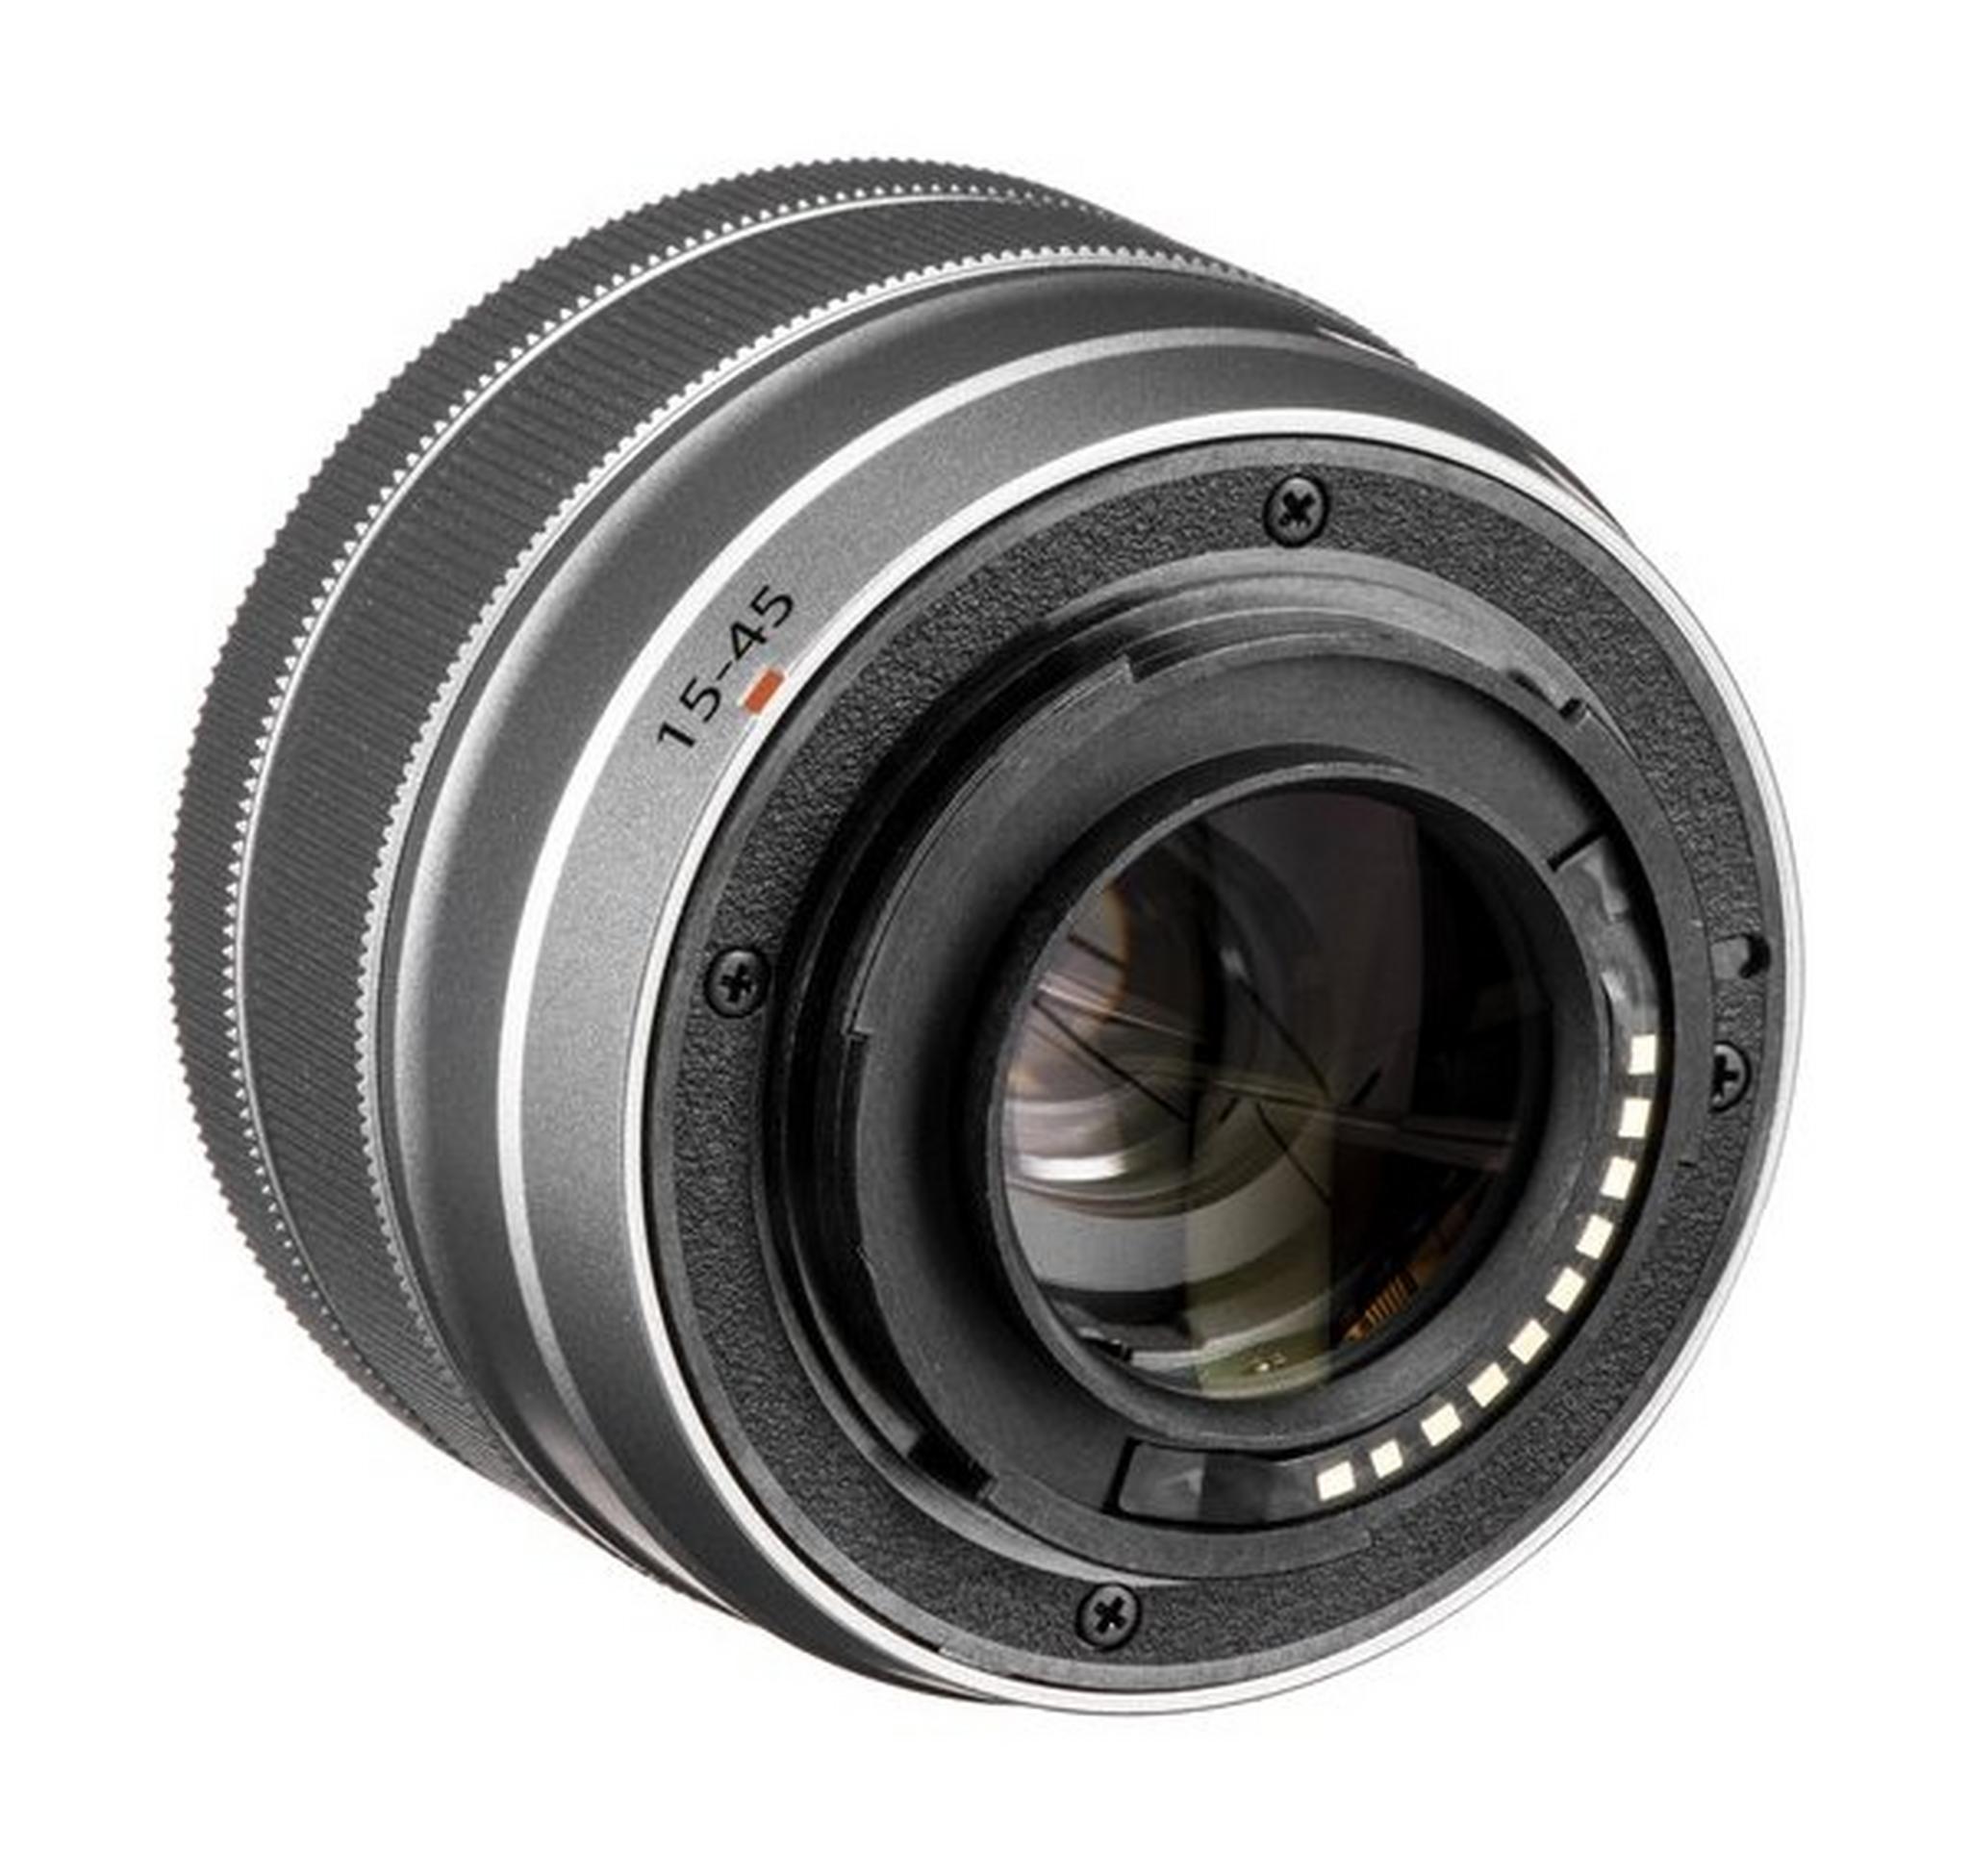 كاميرا فوجي فيلم X-A7 الرقمية بدون مرآة مع عدسة مقاس 15-45 ملم - كراميل